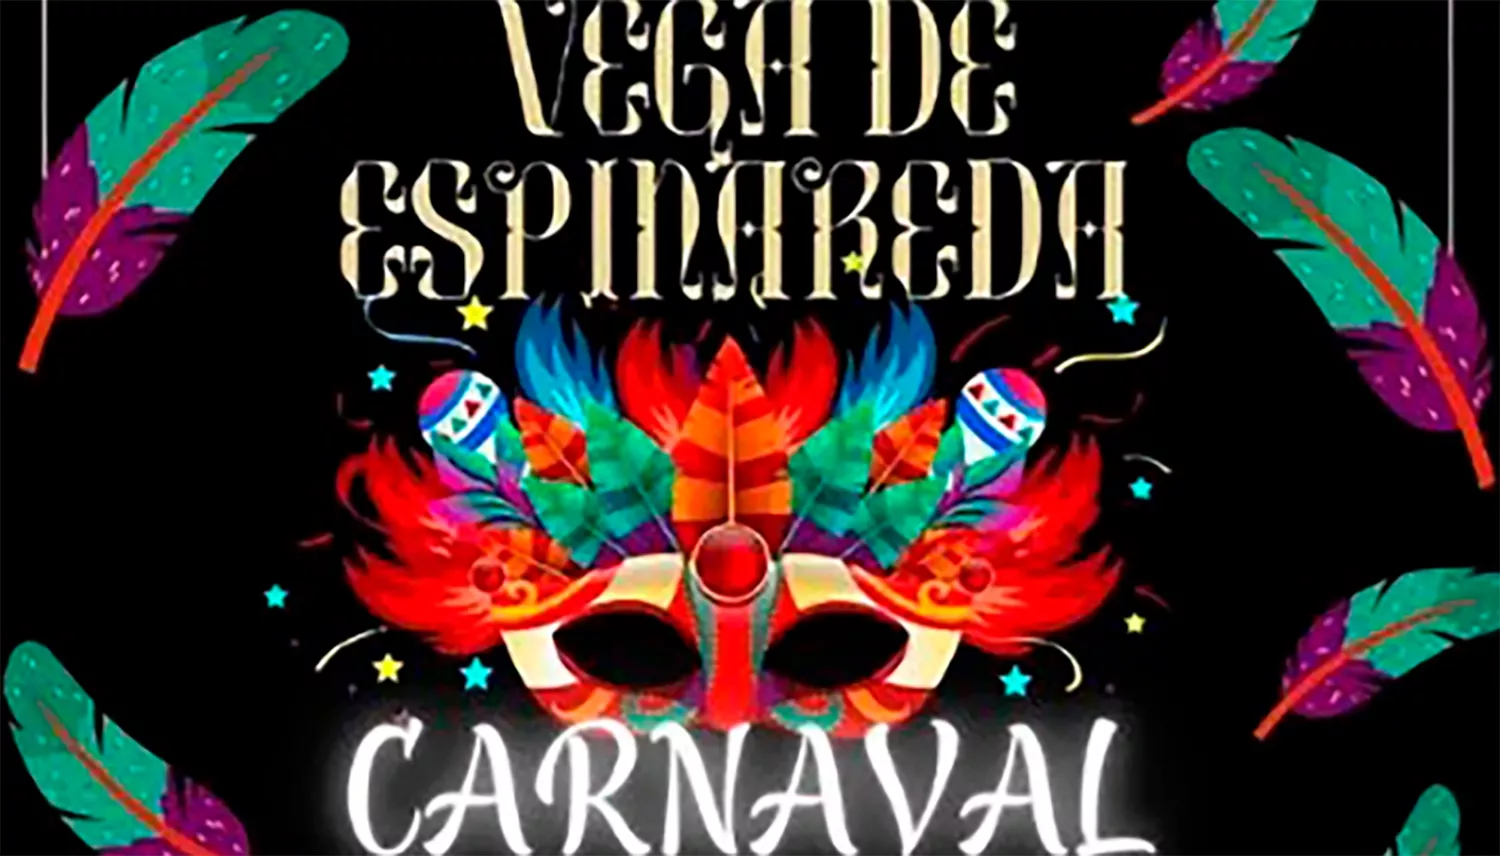 El Carnaval de Vega de Espinareda, aplazado para el 3 de marzo